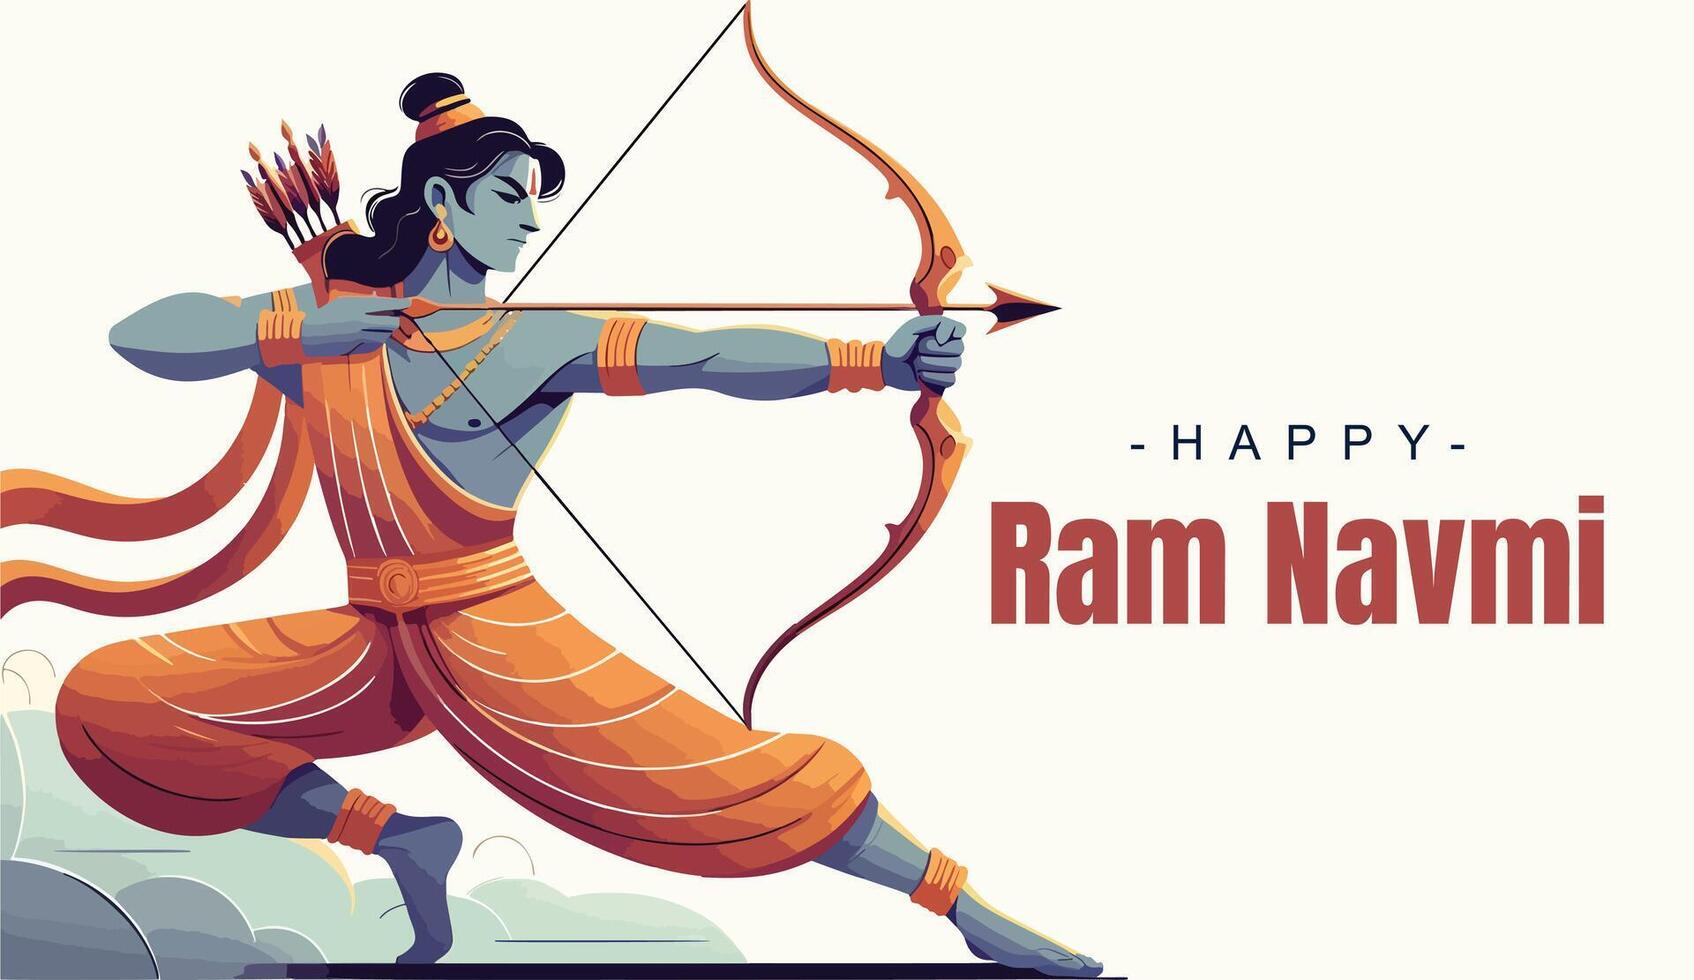 Ram Navami Social media template vector